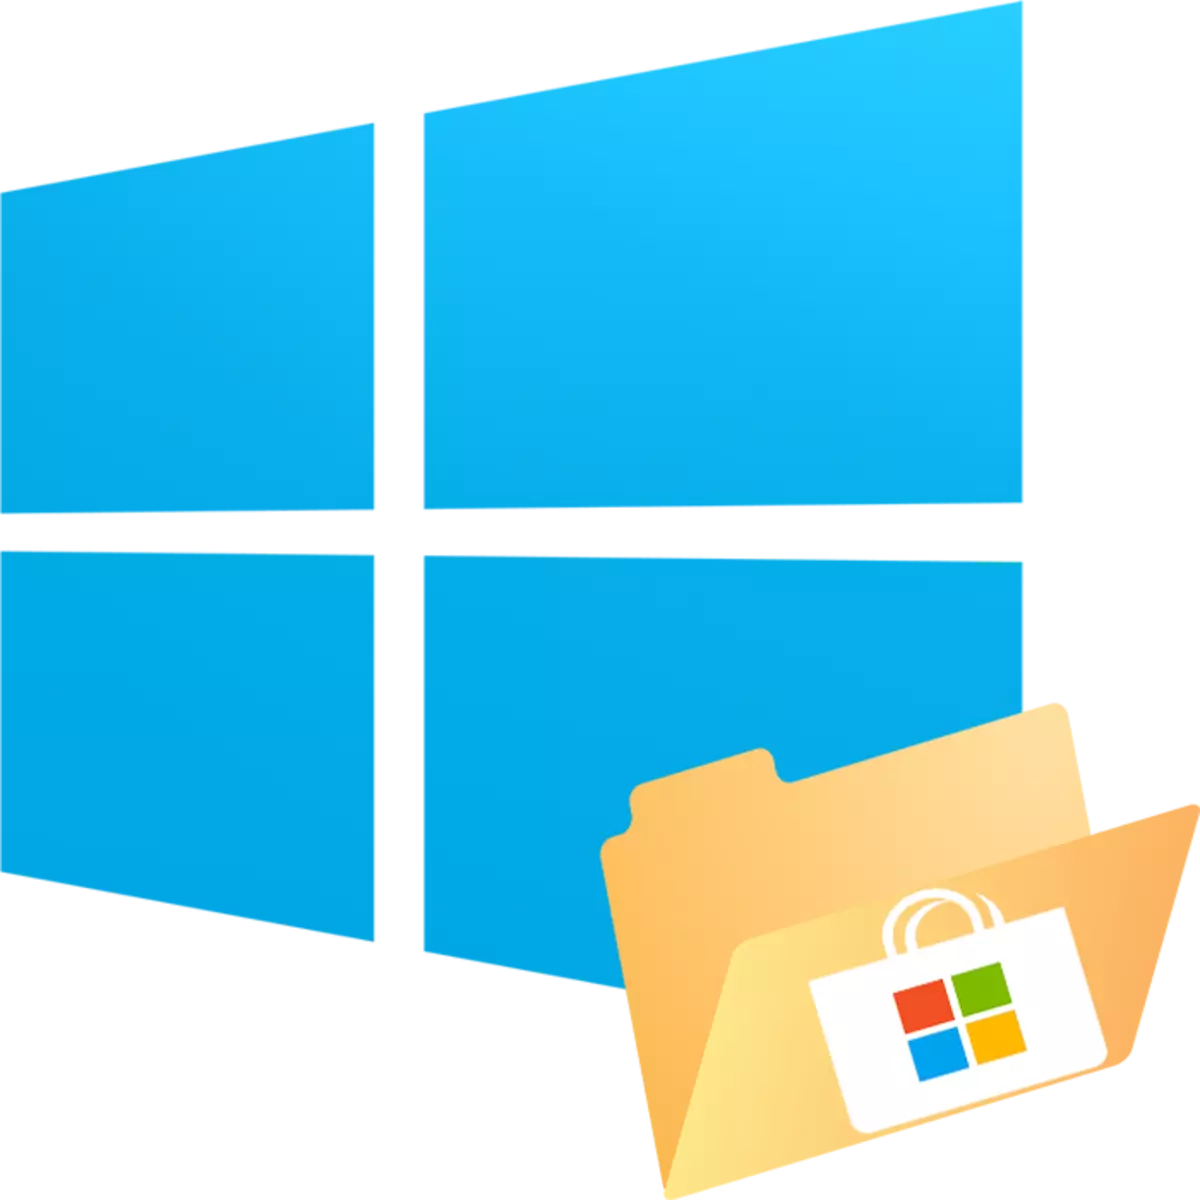 Aiza ny lalao avy amin'ny Microsoft Store ao amin'ny Windows 10